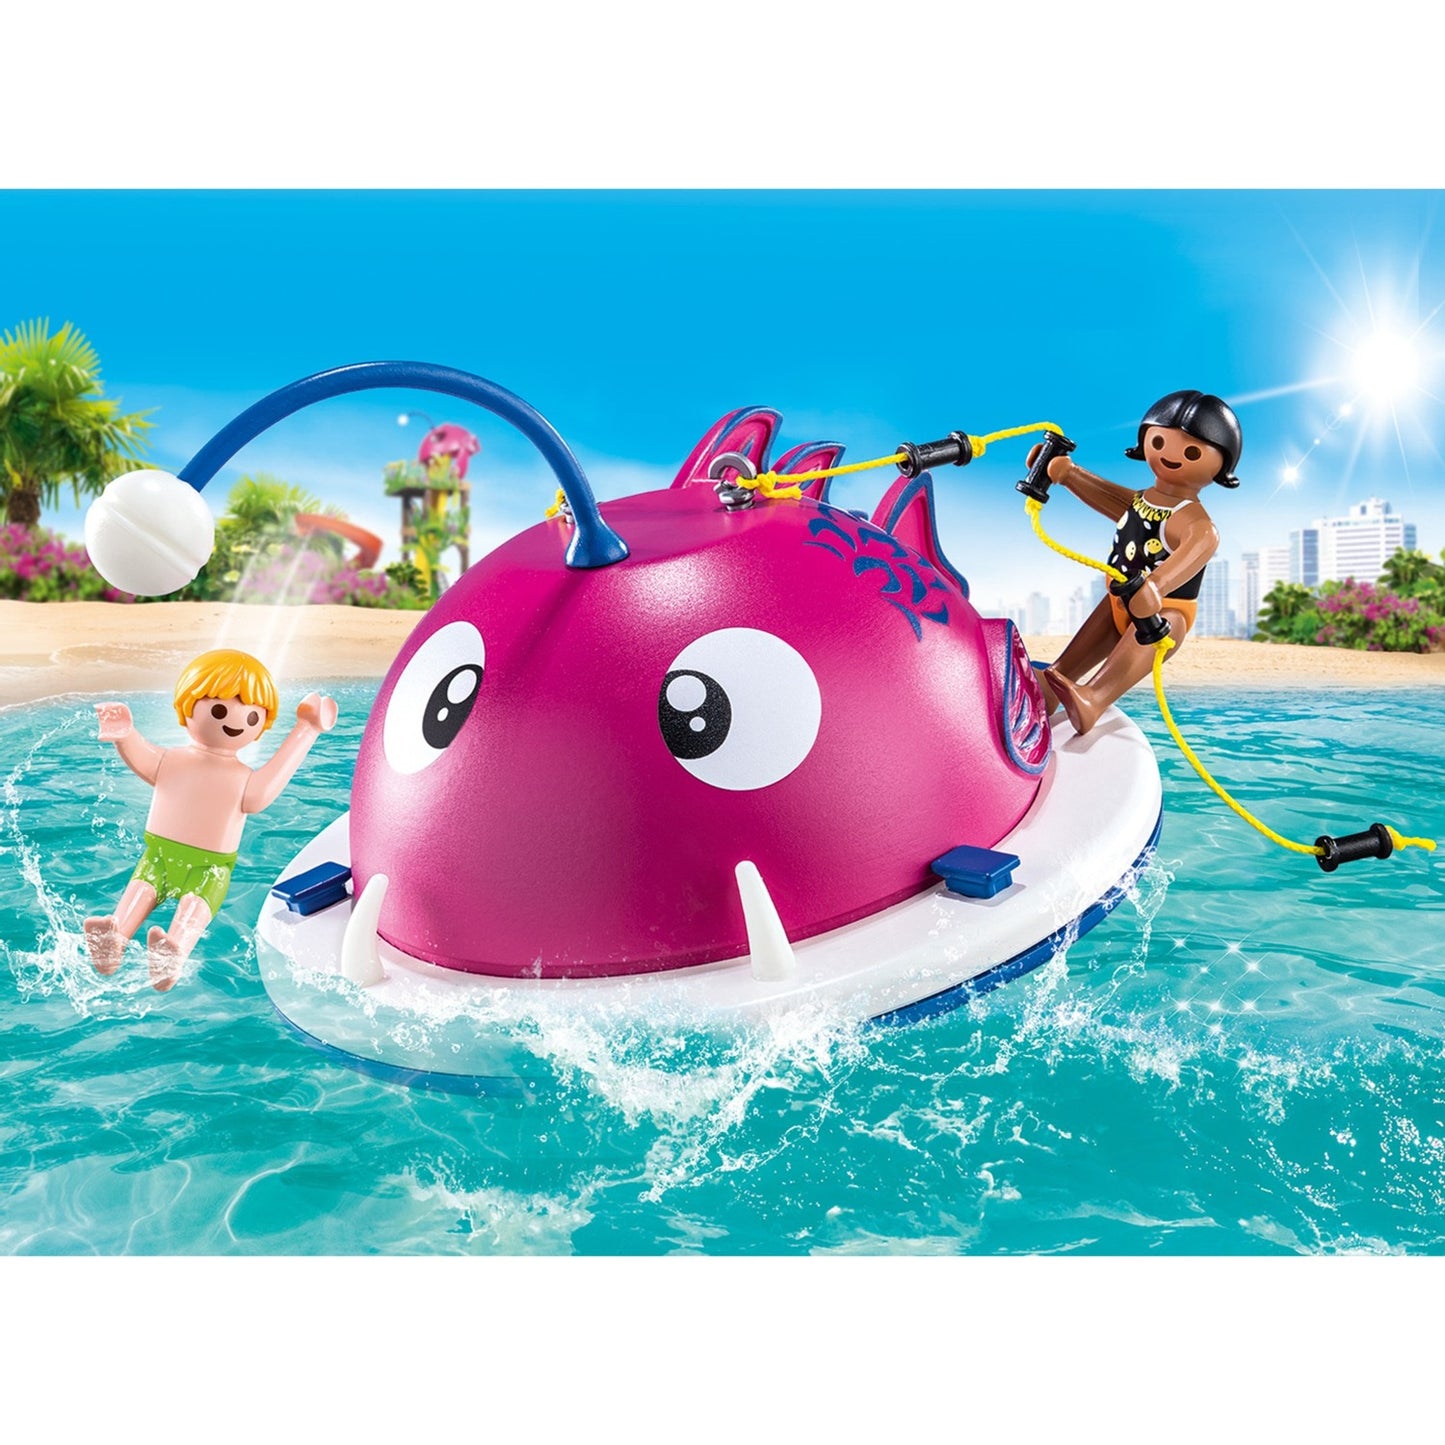 Playmobil Famy Fun Clubing Swimming Island